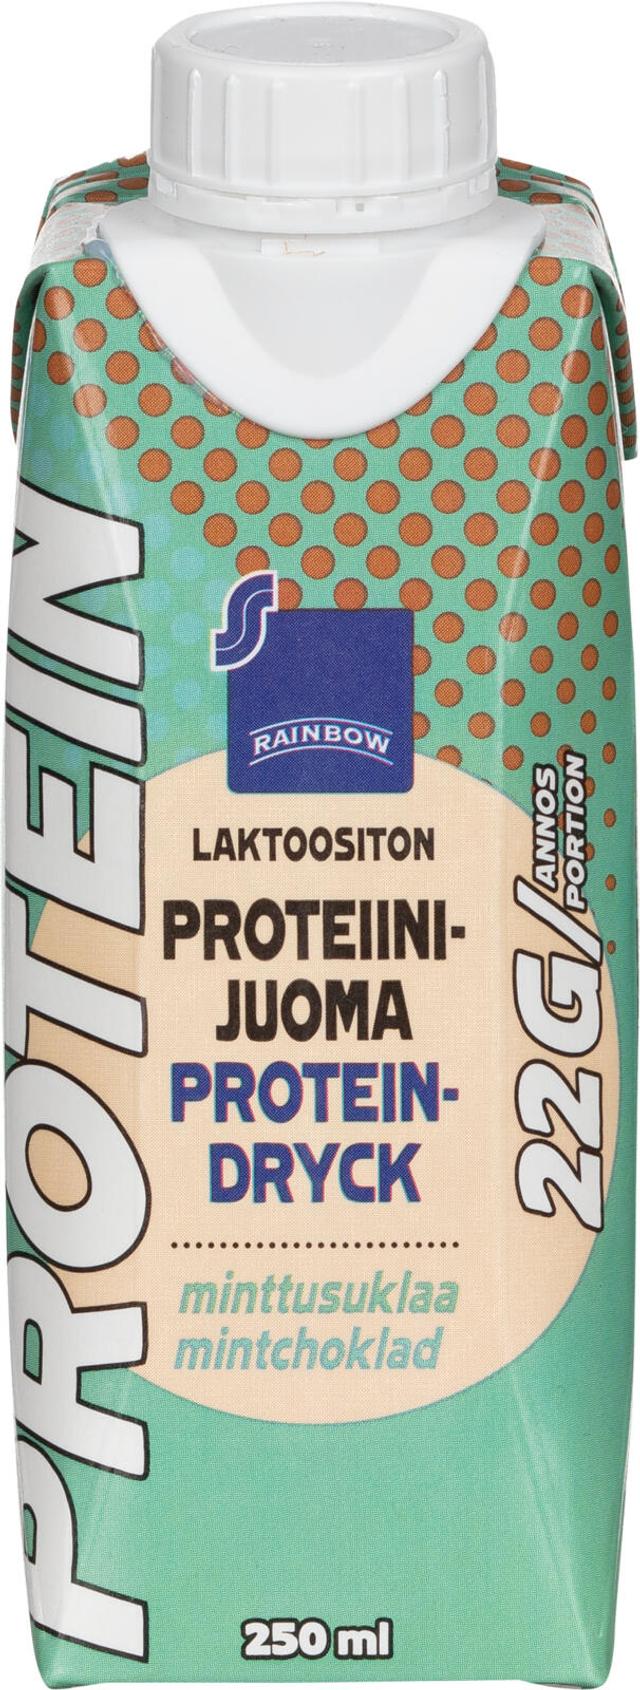 Rainbow laktoositon minttusuklaa proteiinijuoma 250ml